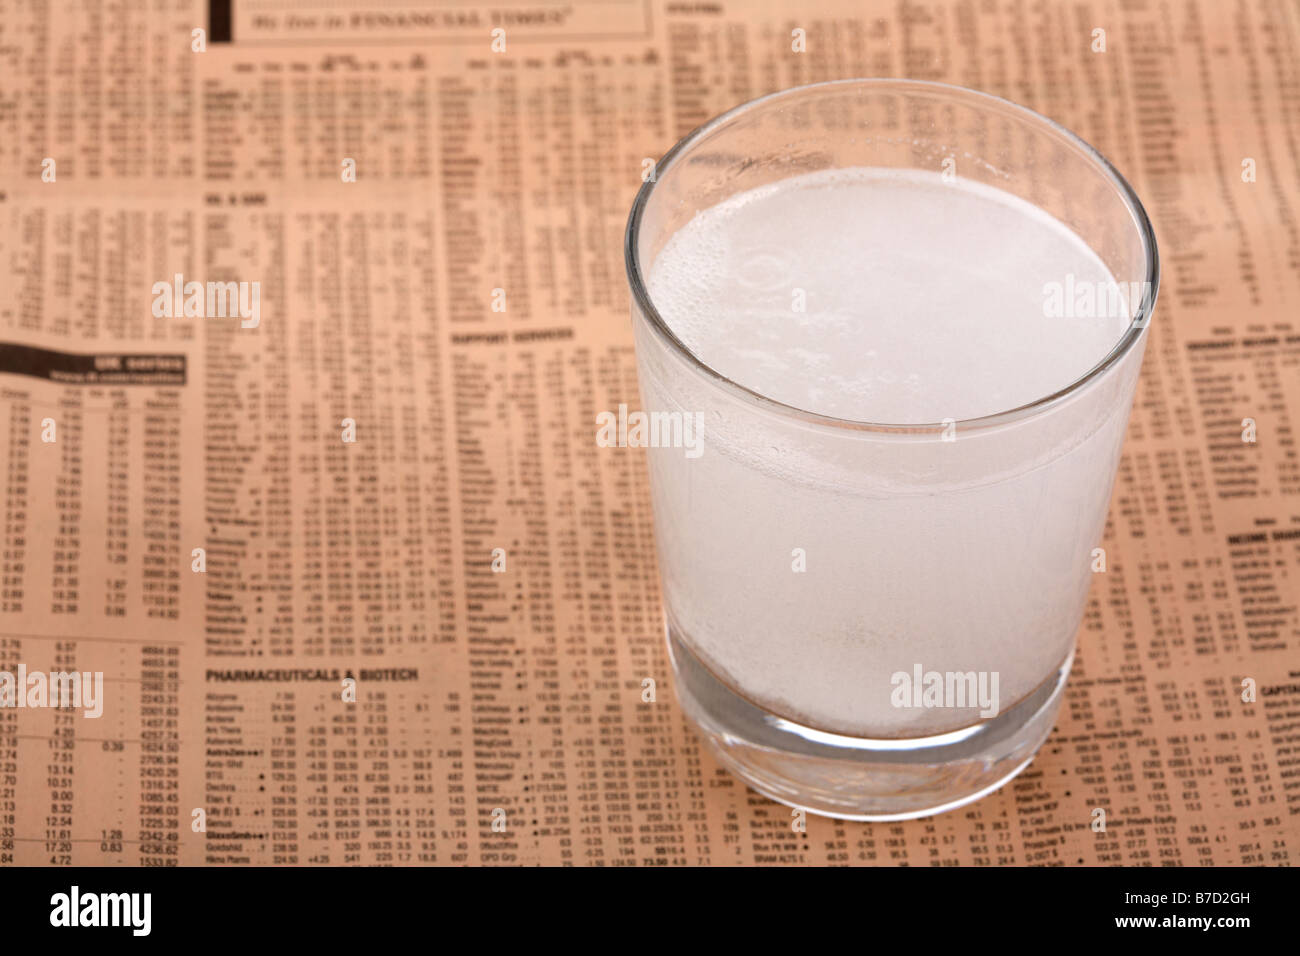 Deux comprimés d'aspirine paracétamol soluble dans un verre d'eau sur un exemplaire du Financial Times Banque D'Images